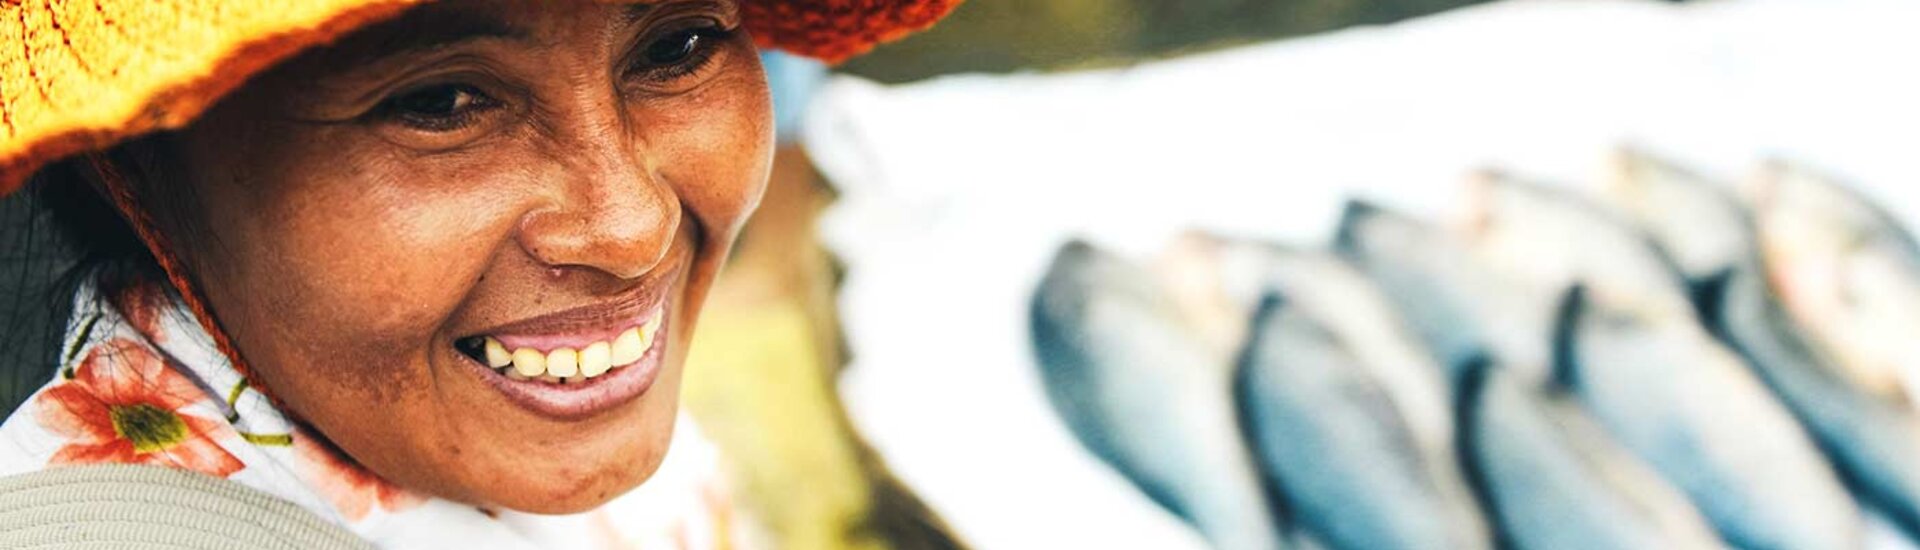 Fischverkäuferin in Siem Reap